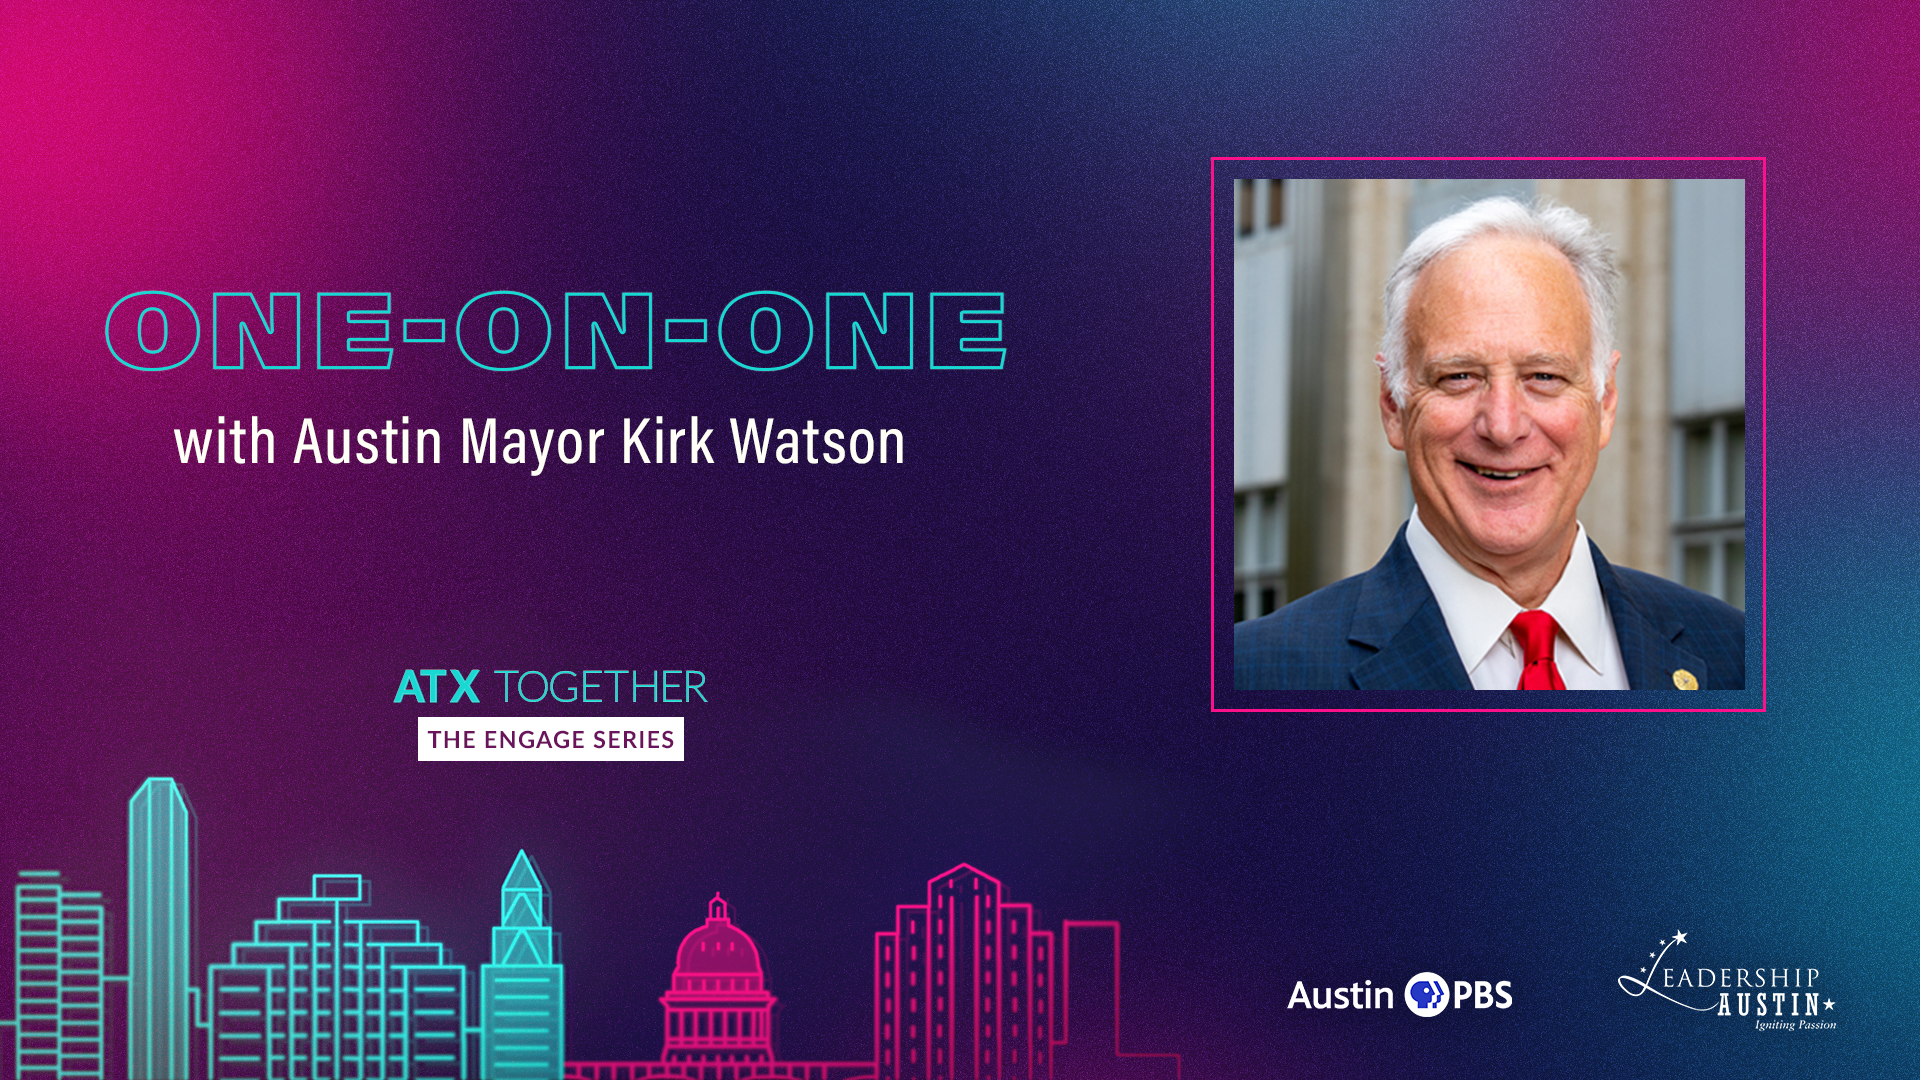 One on one with Austin Mayor Kirk Watson